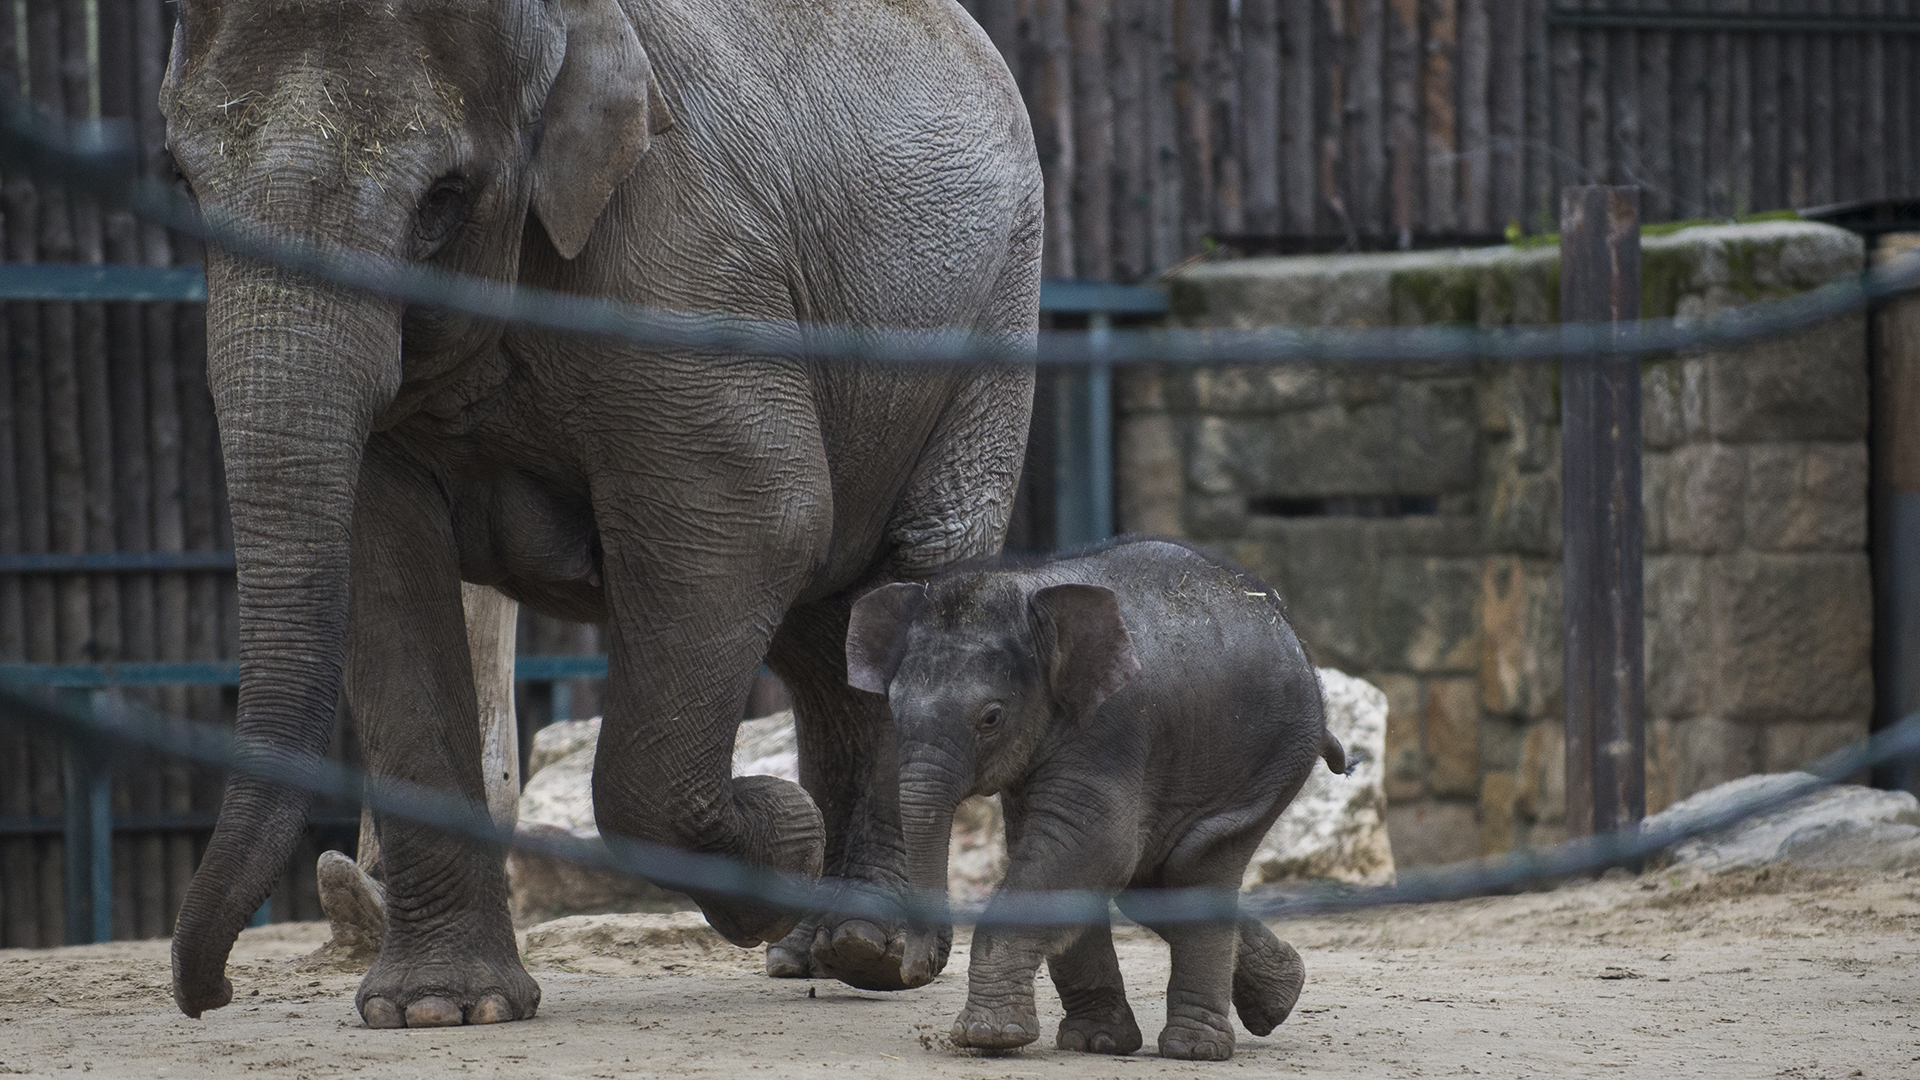 Licitálni lehet a fővárosi állatkert kiselefántjának láblenyomatára